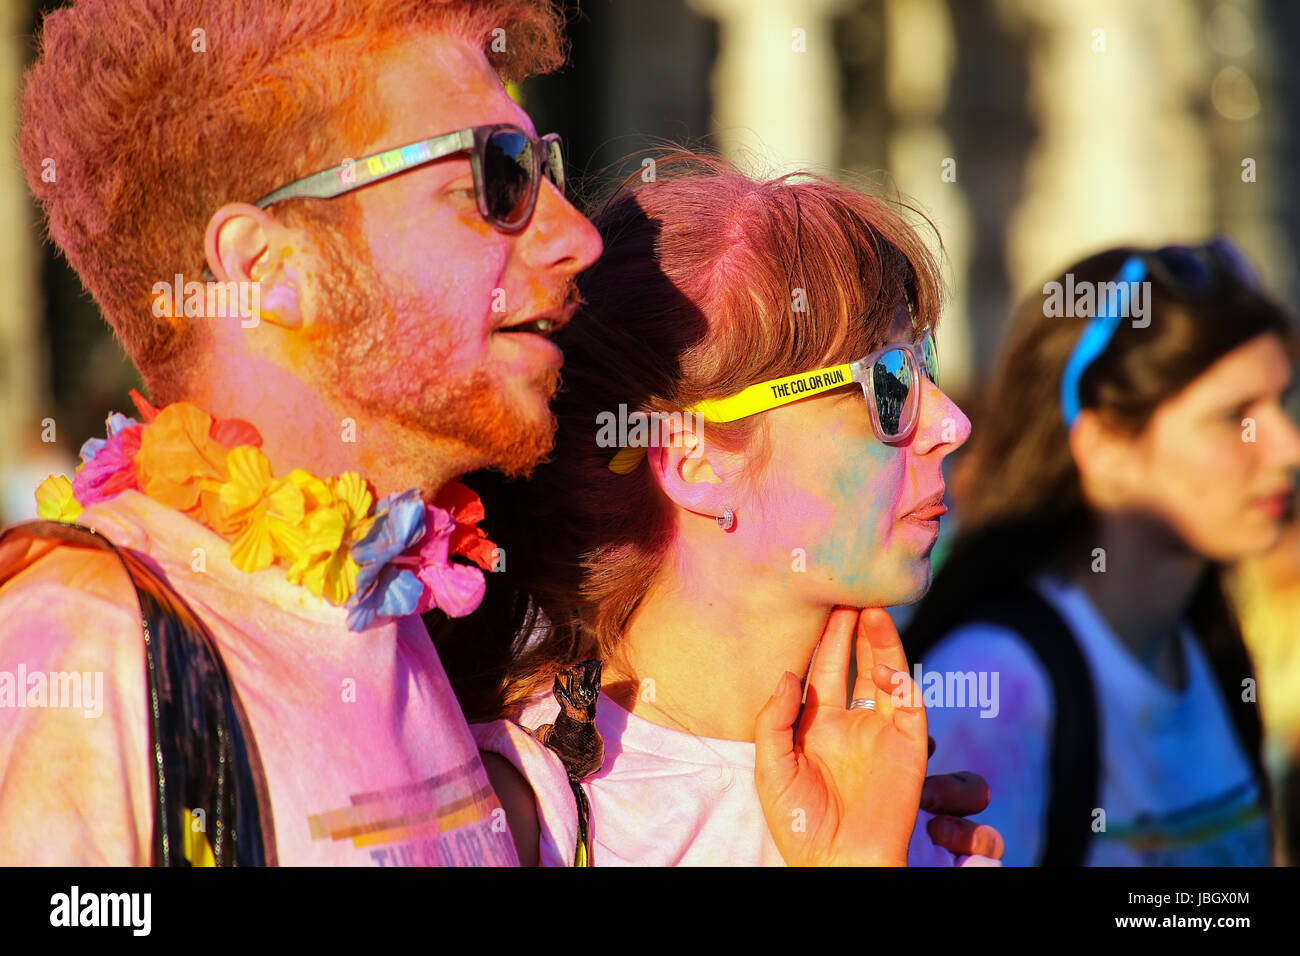 Ritratto di coppia giovane prendendo parte al Colour Run a Trieste, Italia. Trieste è la capitale della regione autonoma Friuli Venezia Giulia Foto Stock